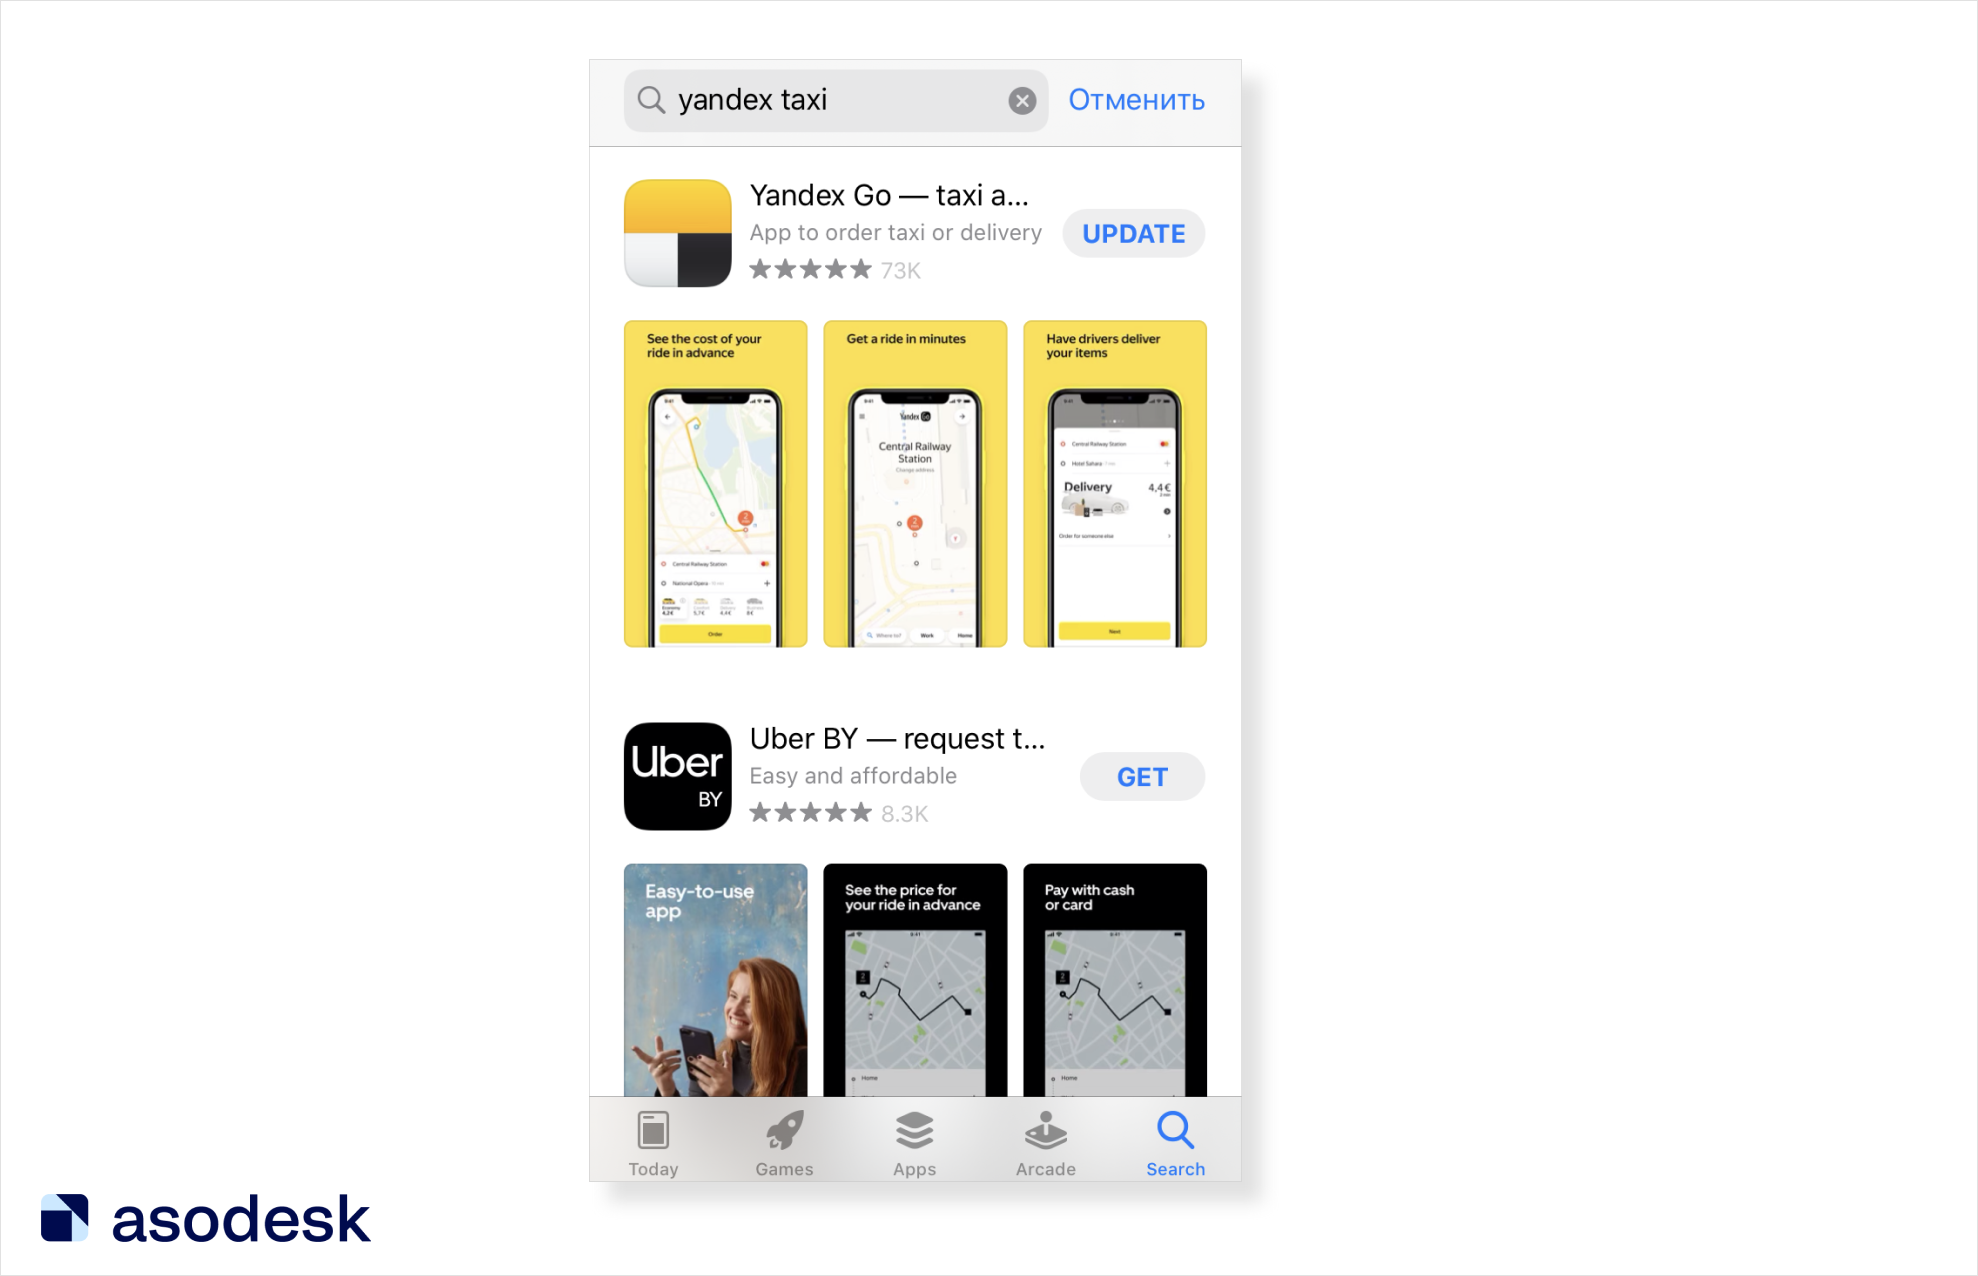 Поисковая выдача по запросу Yandex в App Store